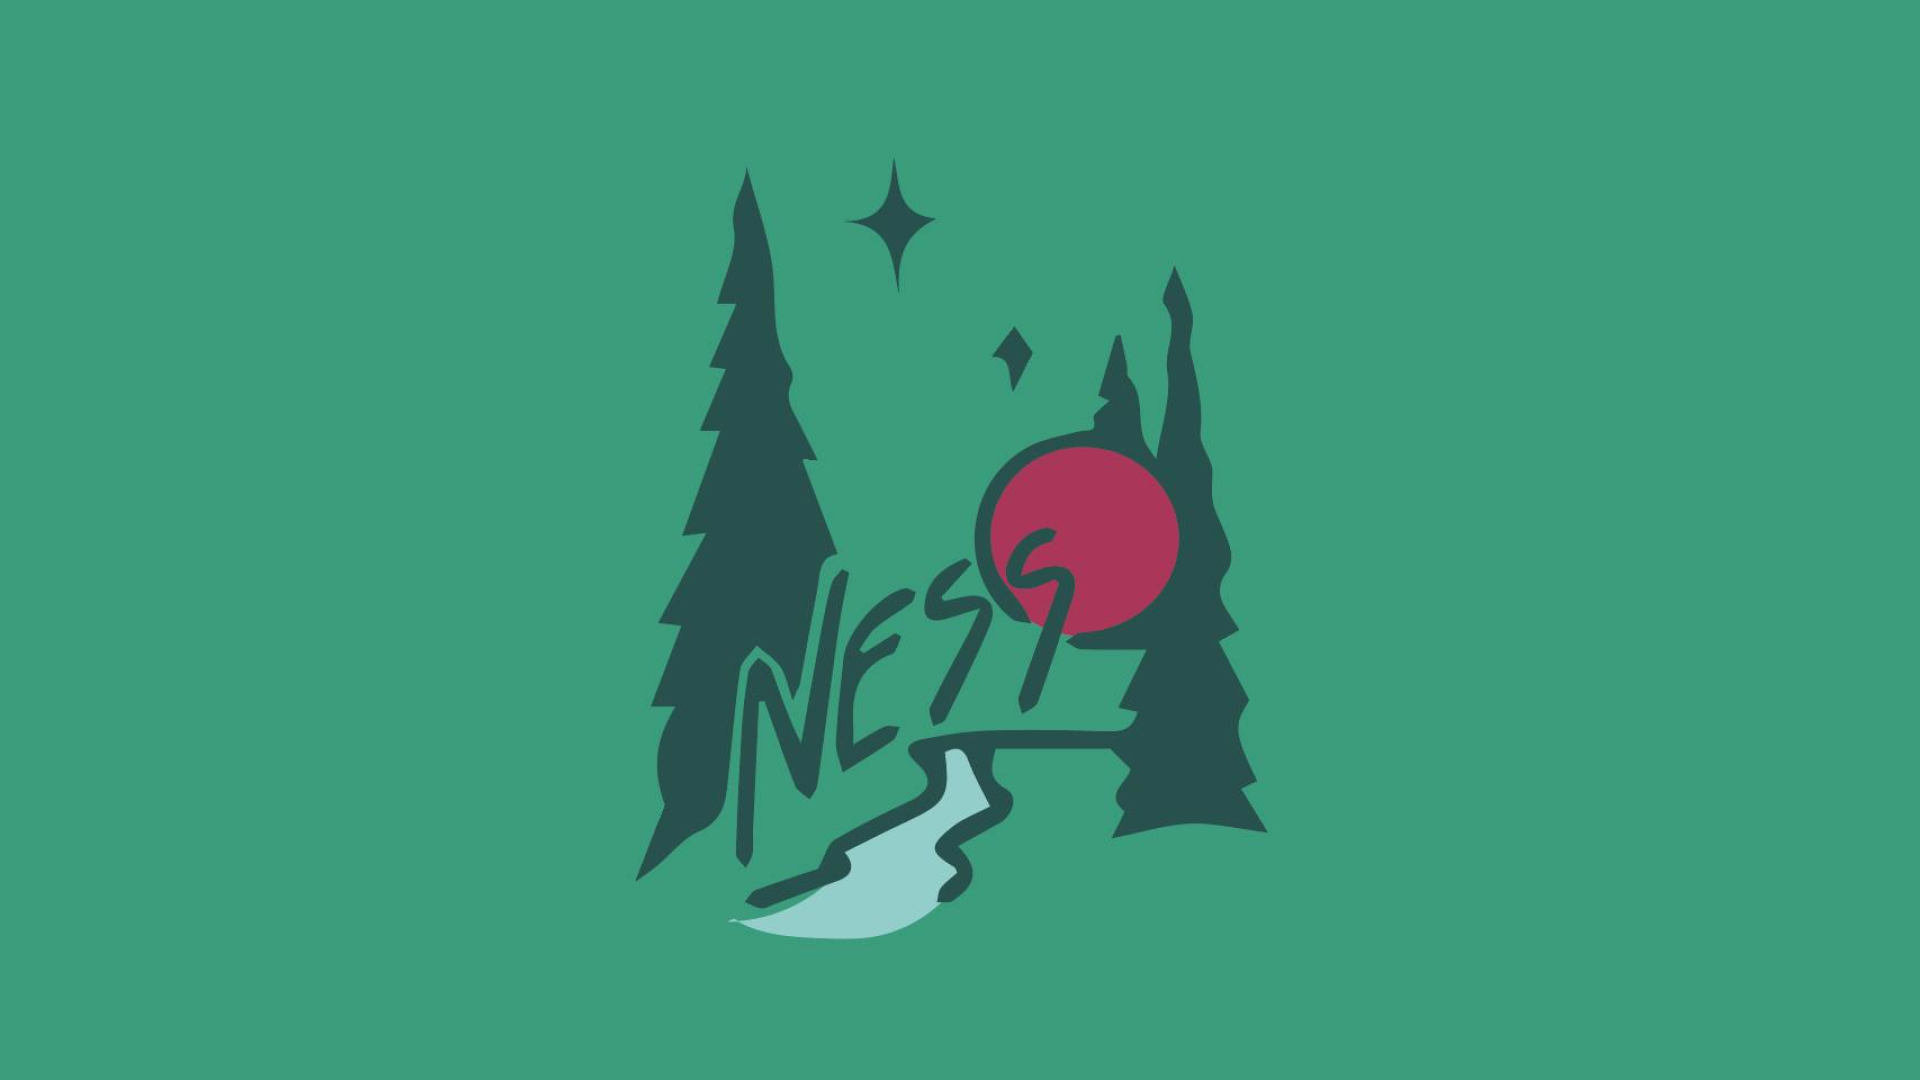 Ness Creek Music Festival Logo